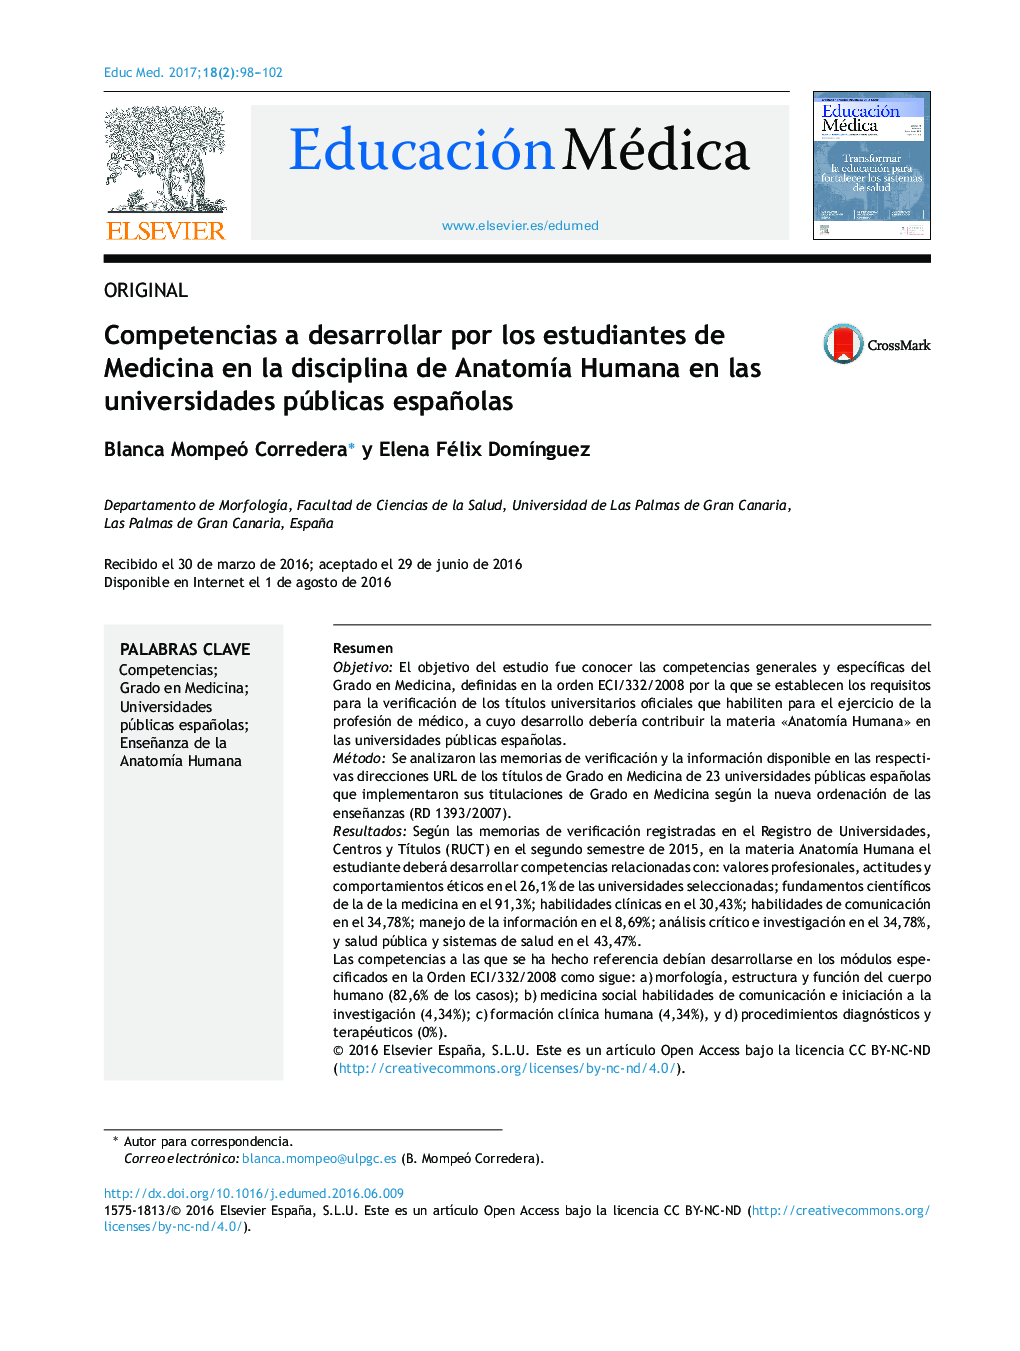 Competencias a desarrollar por los estudiantes de Medicina en la disciplina de AnatomÃ­a Humana en las universidades públicas españolas